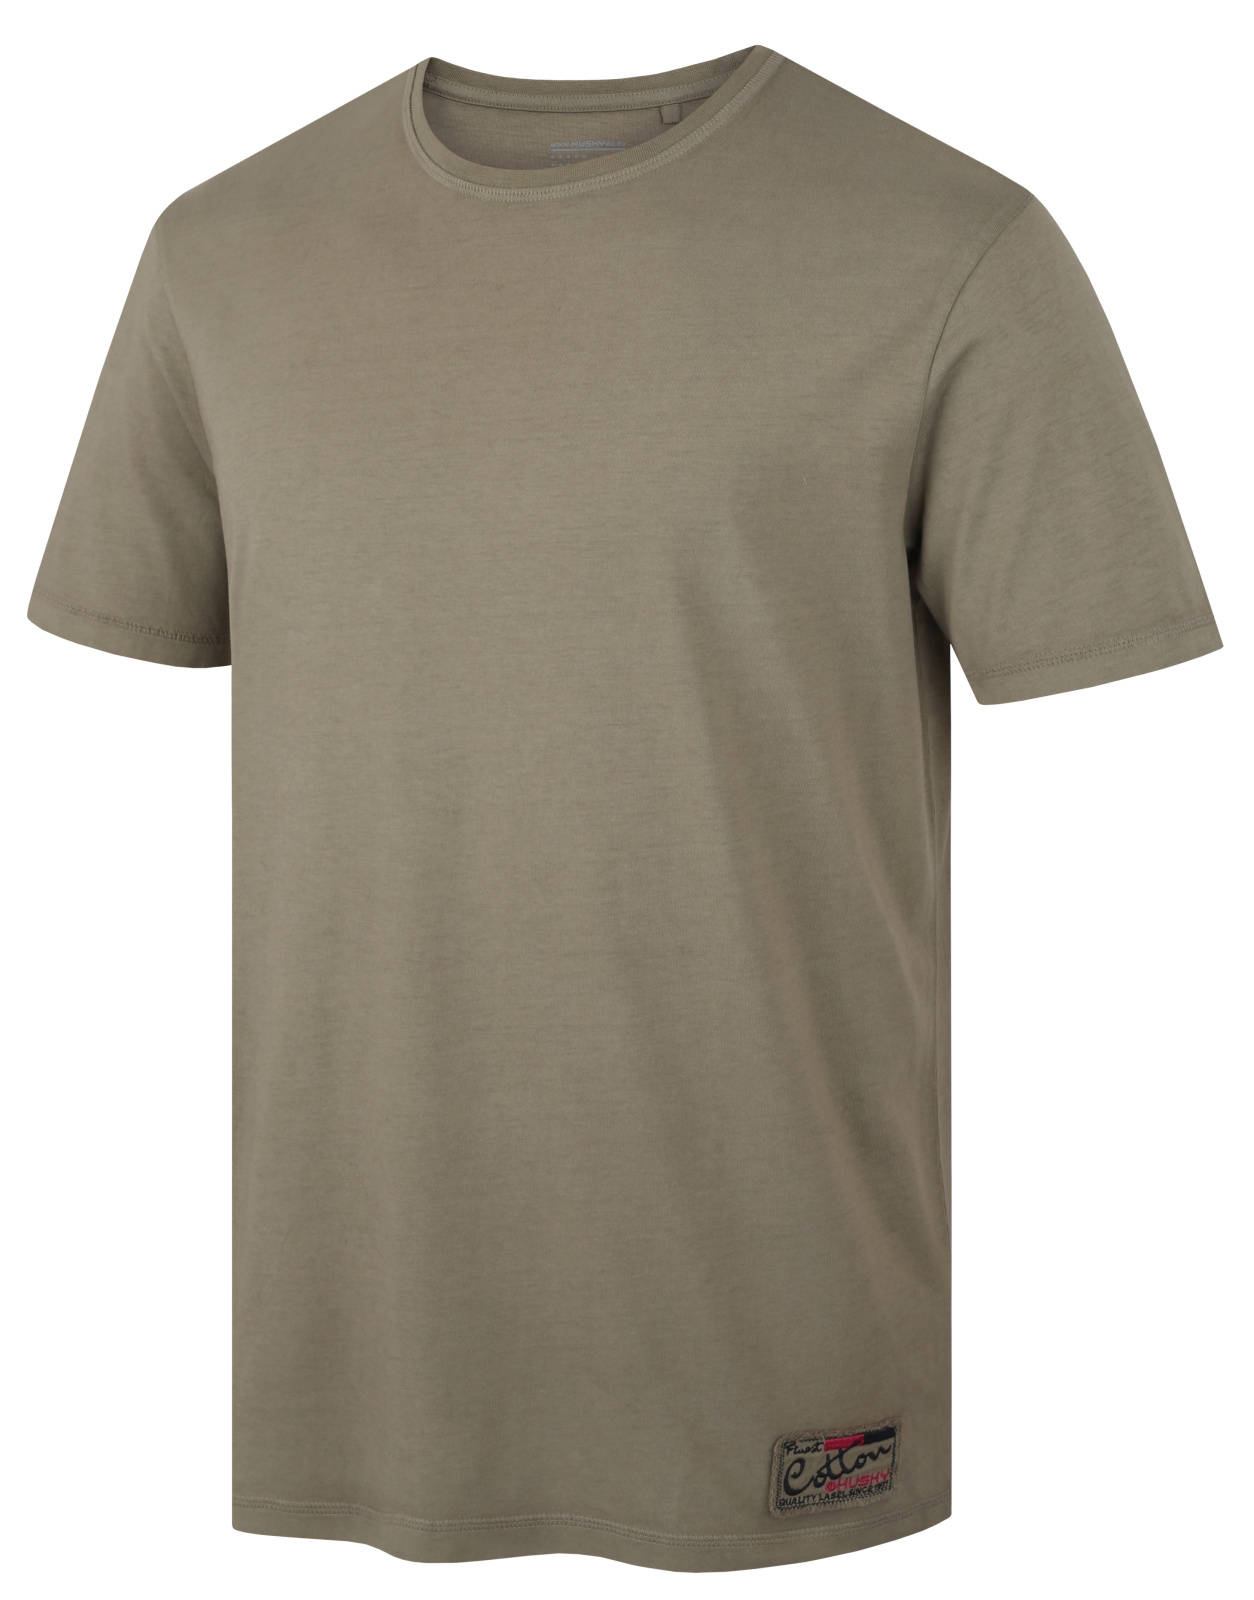 Husky Pánské bavlněné triko Tee Base M dark khaki Velikost: M pánské tričko s krátkým rukávem